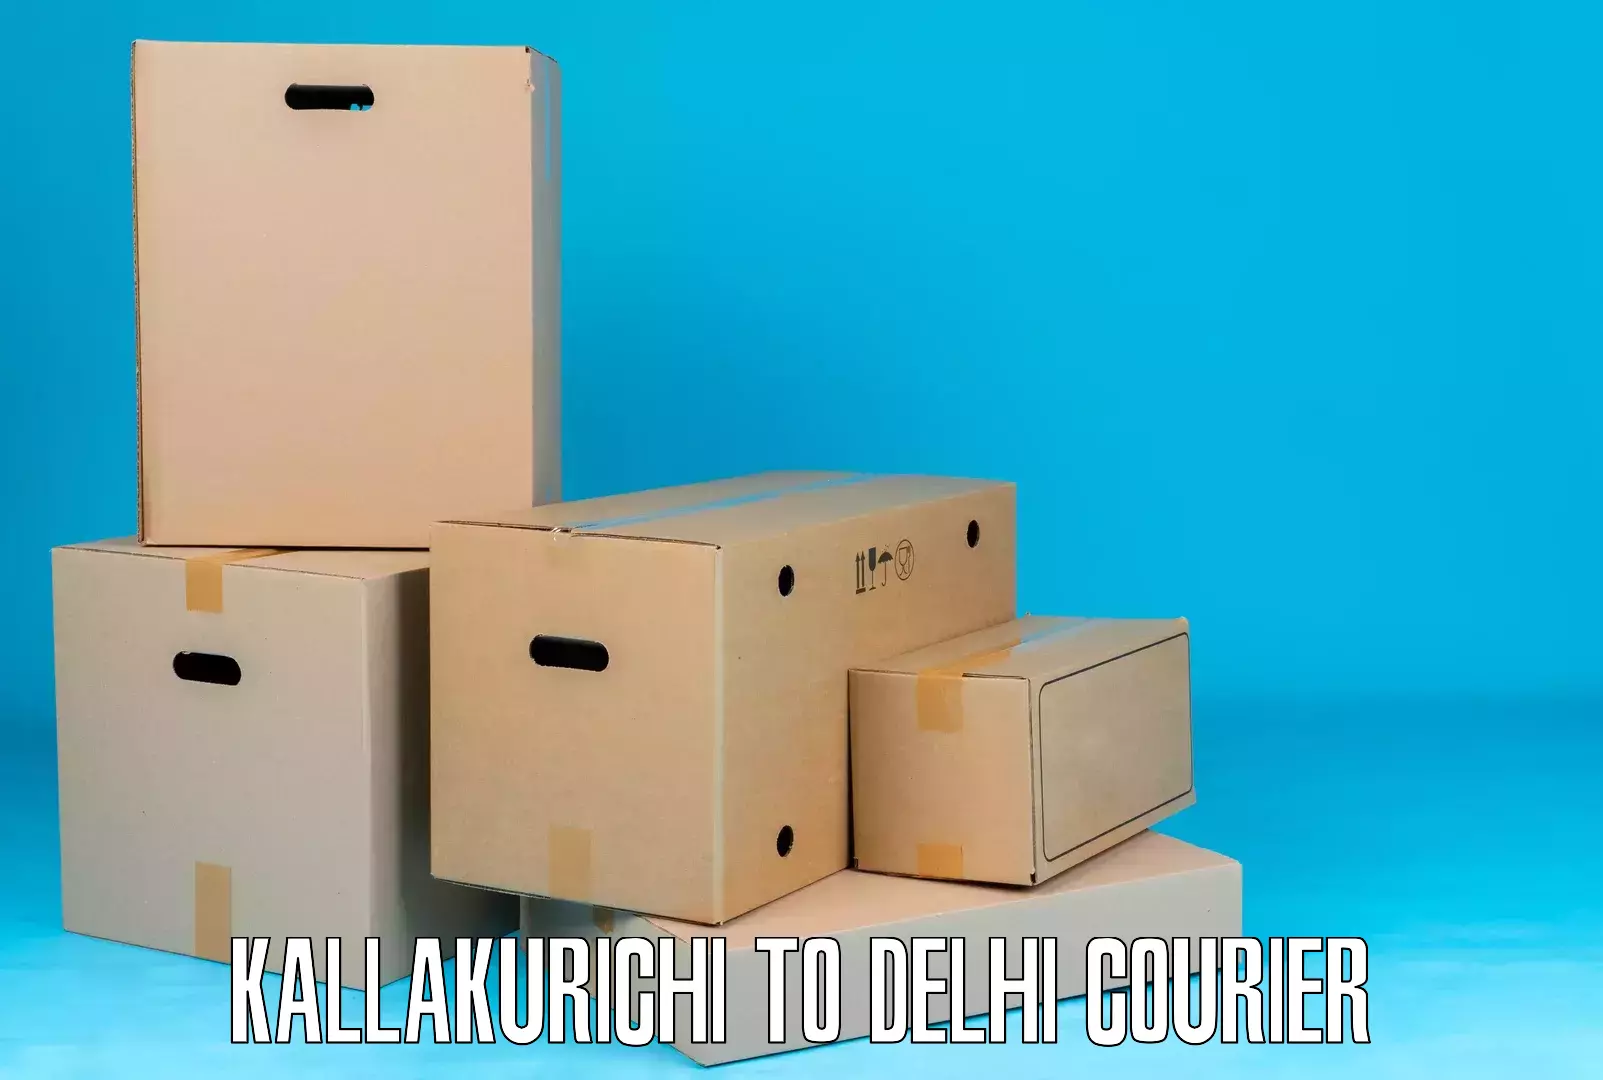 E-commerce fulfillment Kallakurichi to Delhi